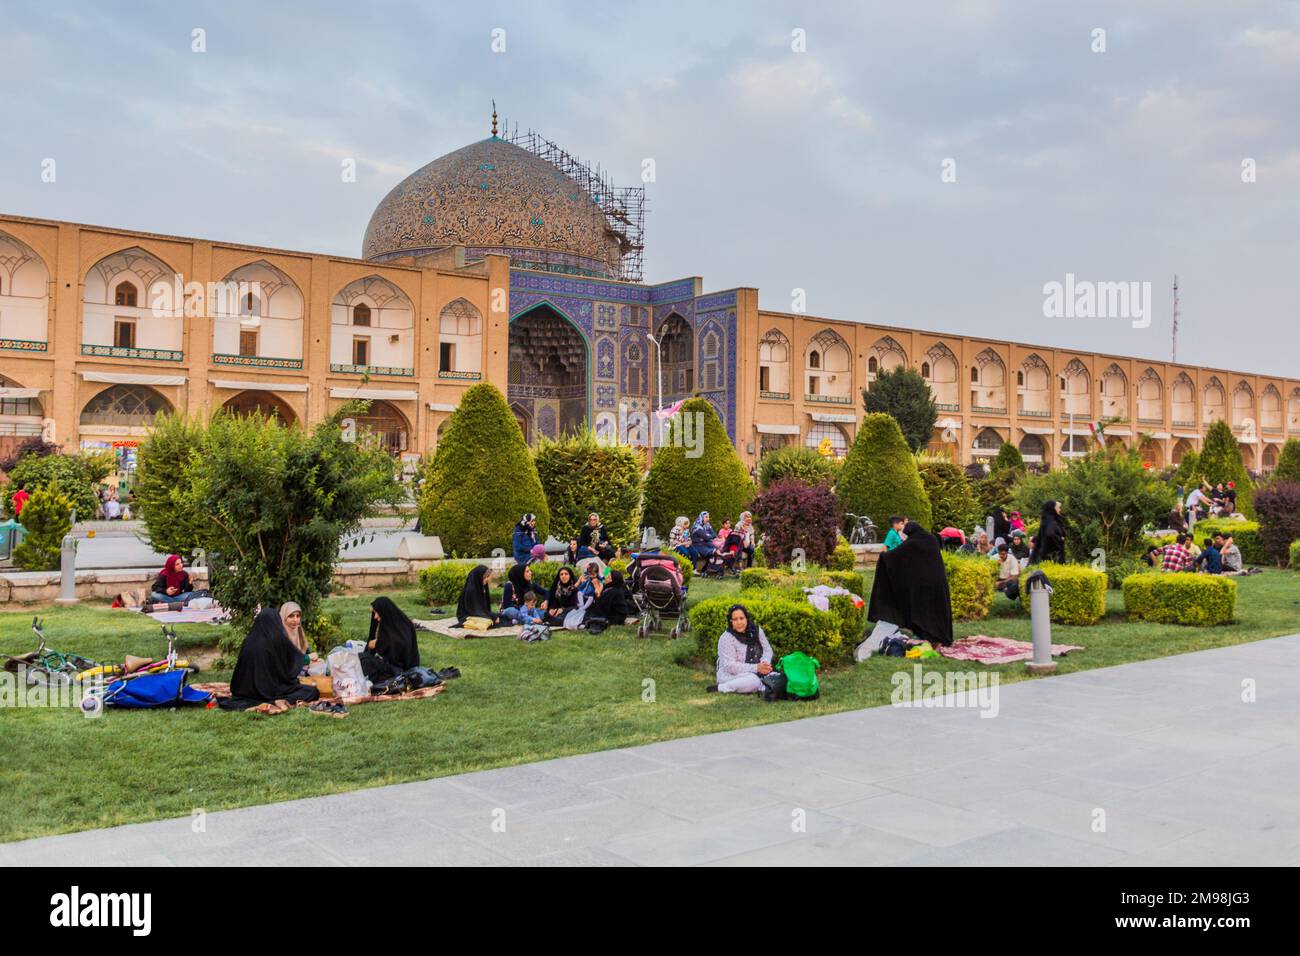 ISFAHAN, IRAN - JULY 10, 2019: People having picnic in front of the Sheikh Lotfollah Mosque at Naqsh-e Jahan Square in Isfahan, Iran Stock Photo